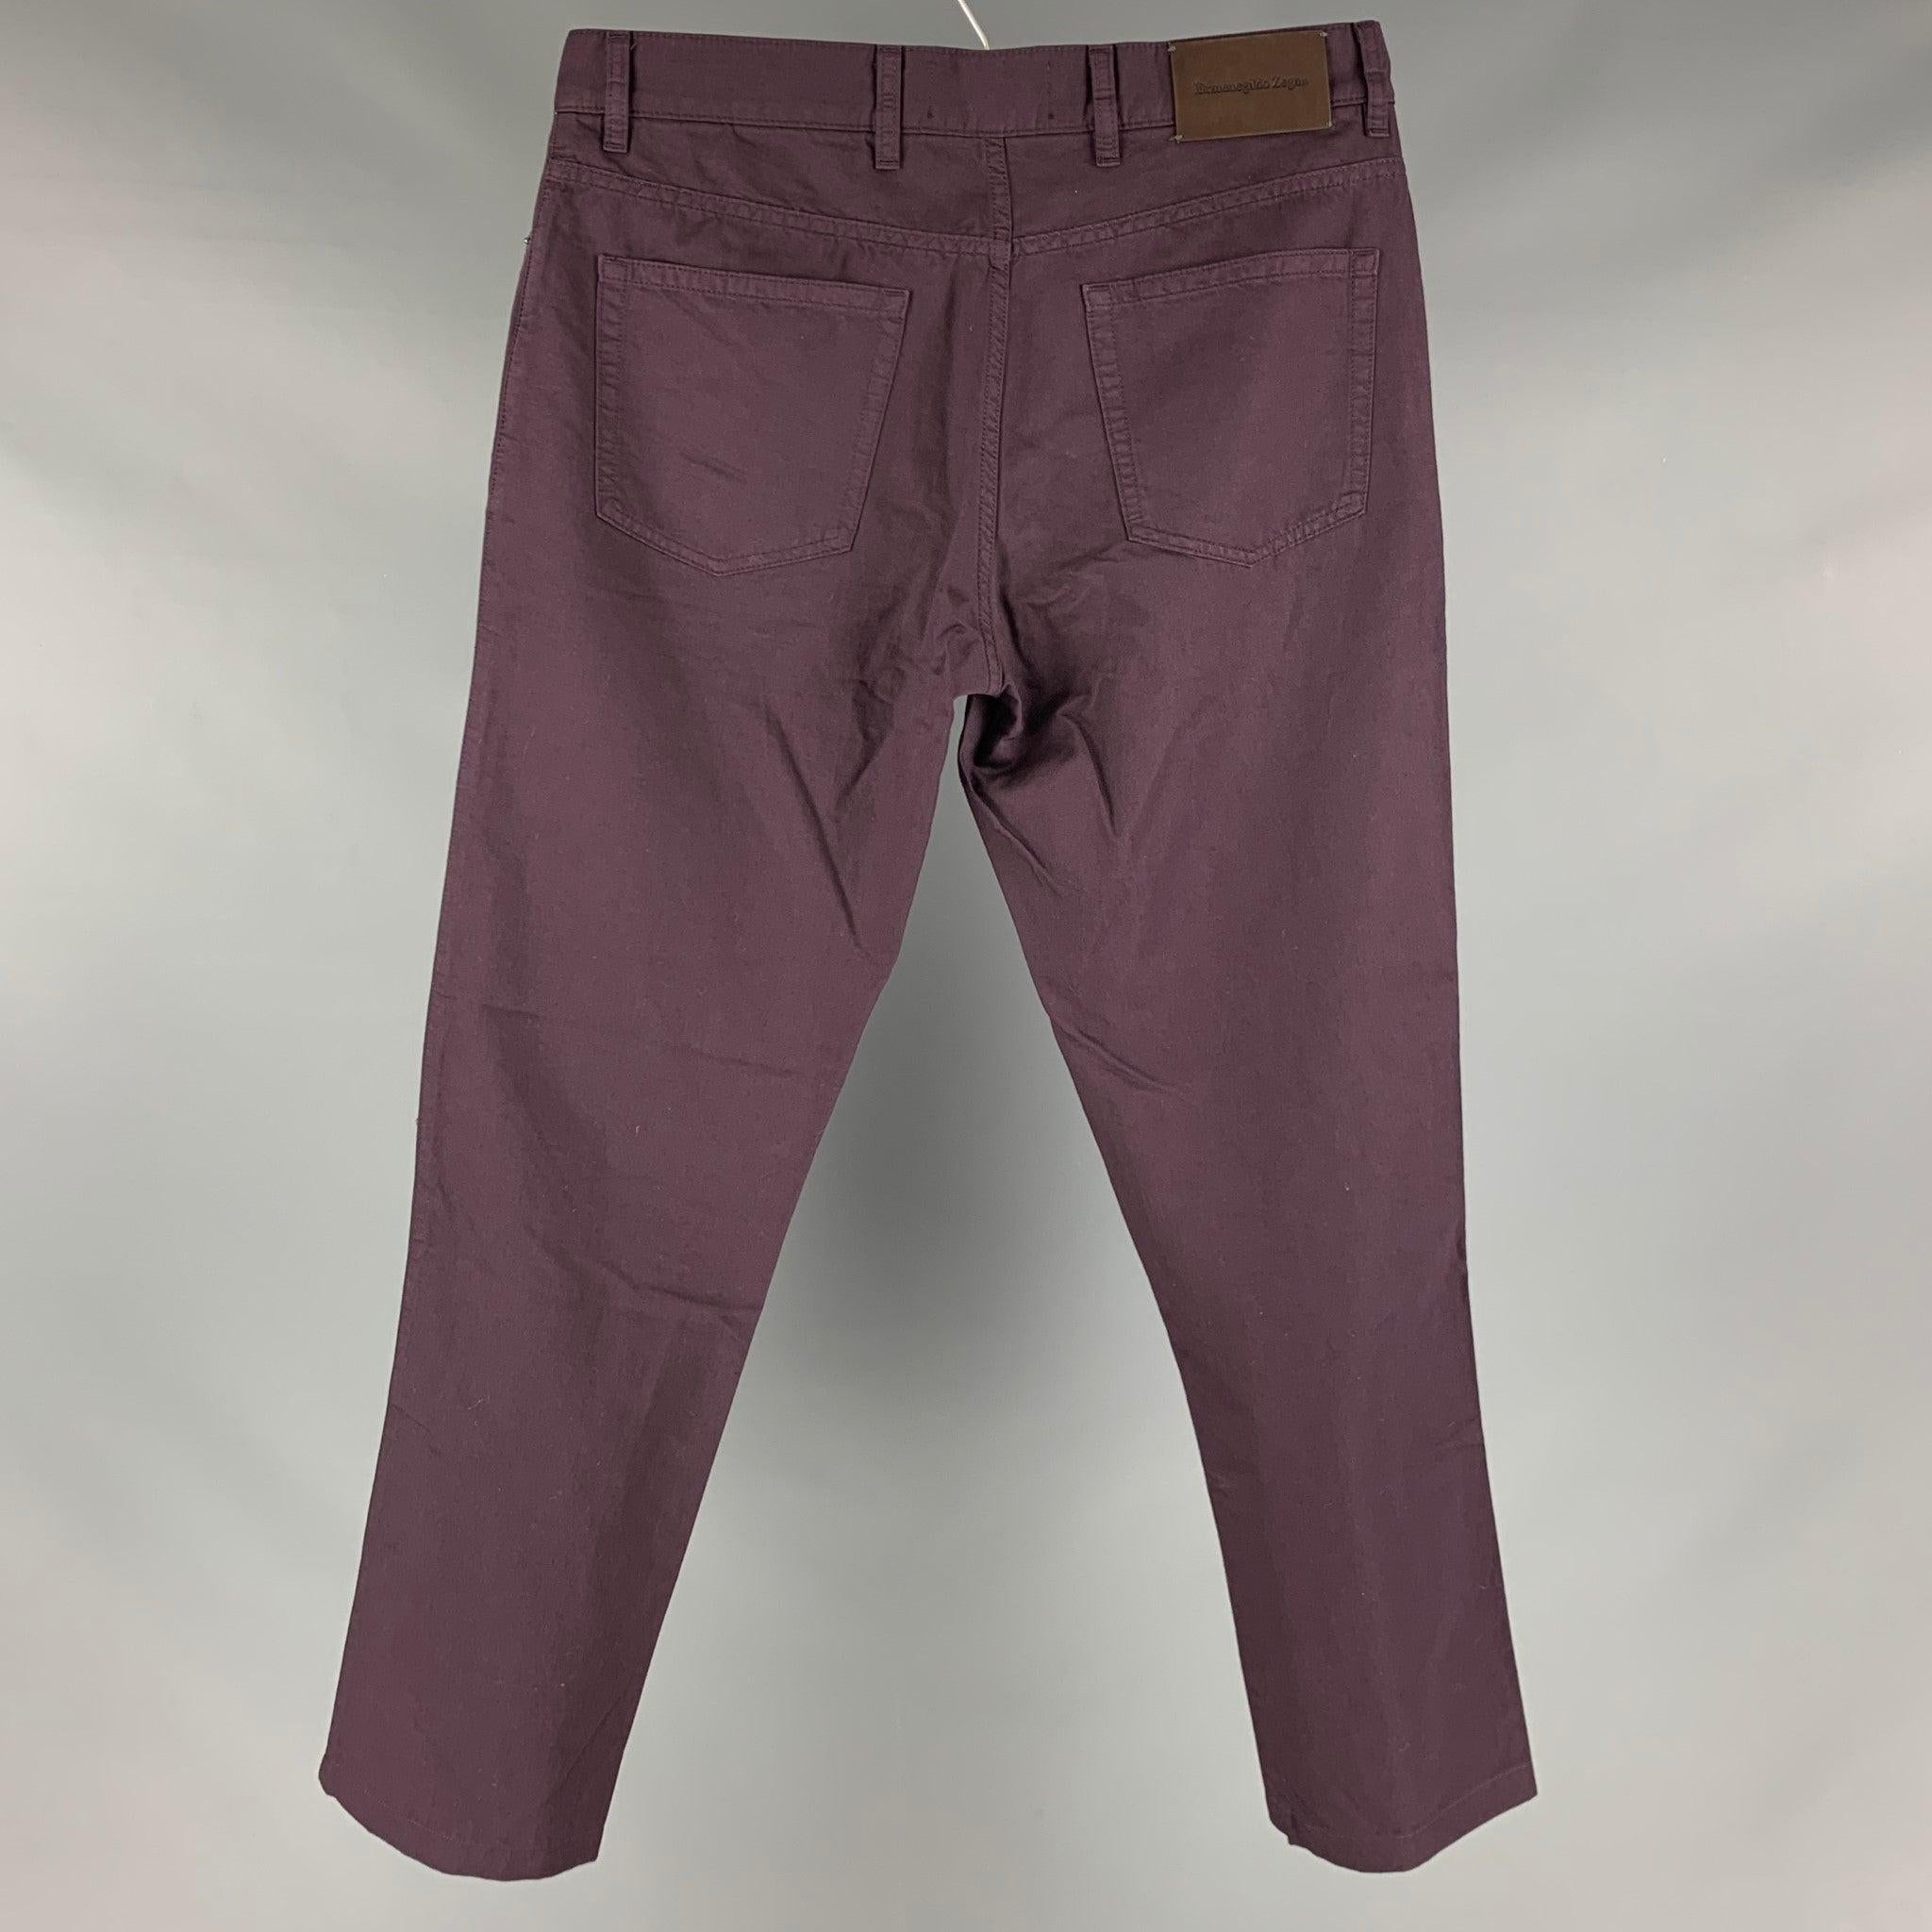 Le pantalon JOHN VARVATOS est un pantalon décontracté en sergé de coton et de lin aubergine, avec cinq poches et une fermeture à glissière. 

Marqué :   34  

Mesures : 
  Taille : 34 pouces  Montée : 9 pouces  Entrejambe : 28 pouces  
  
  
